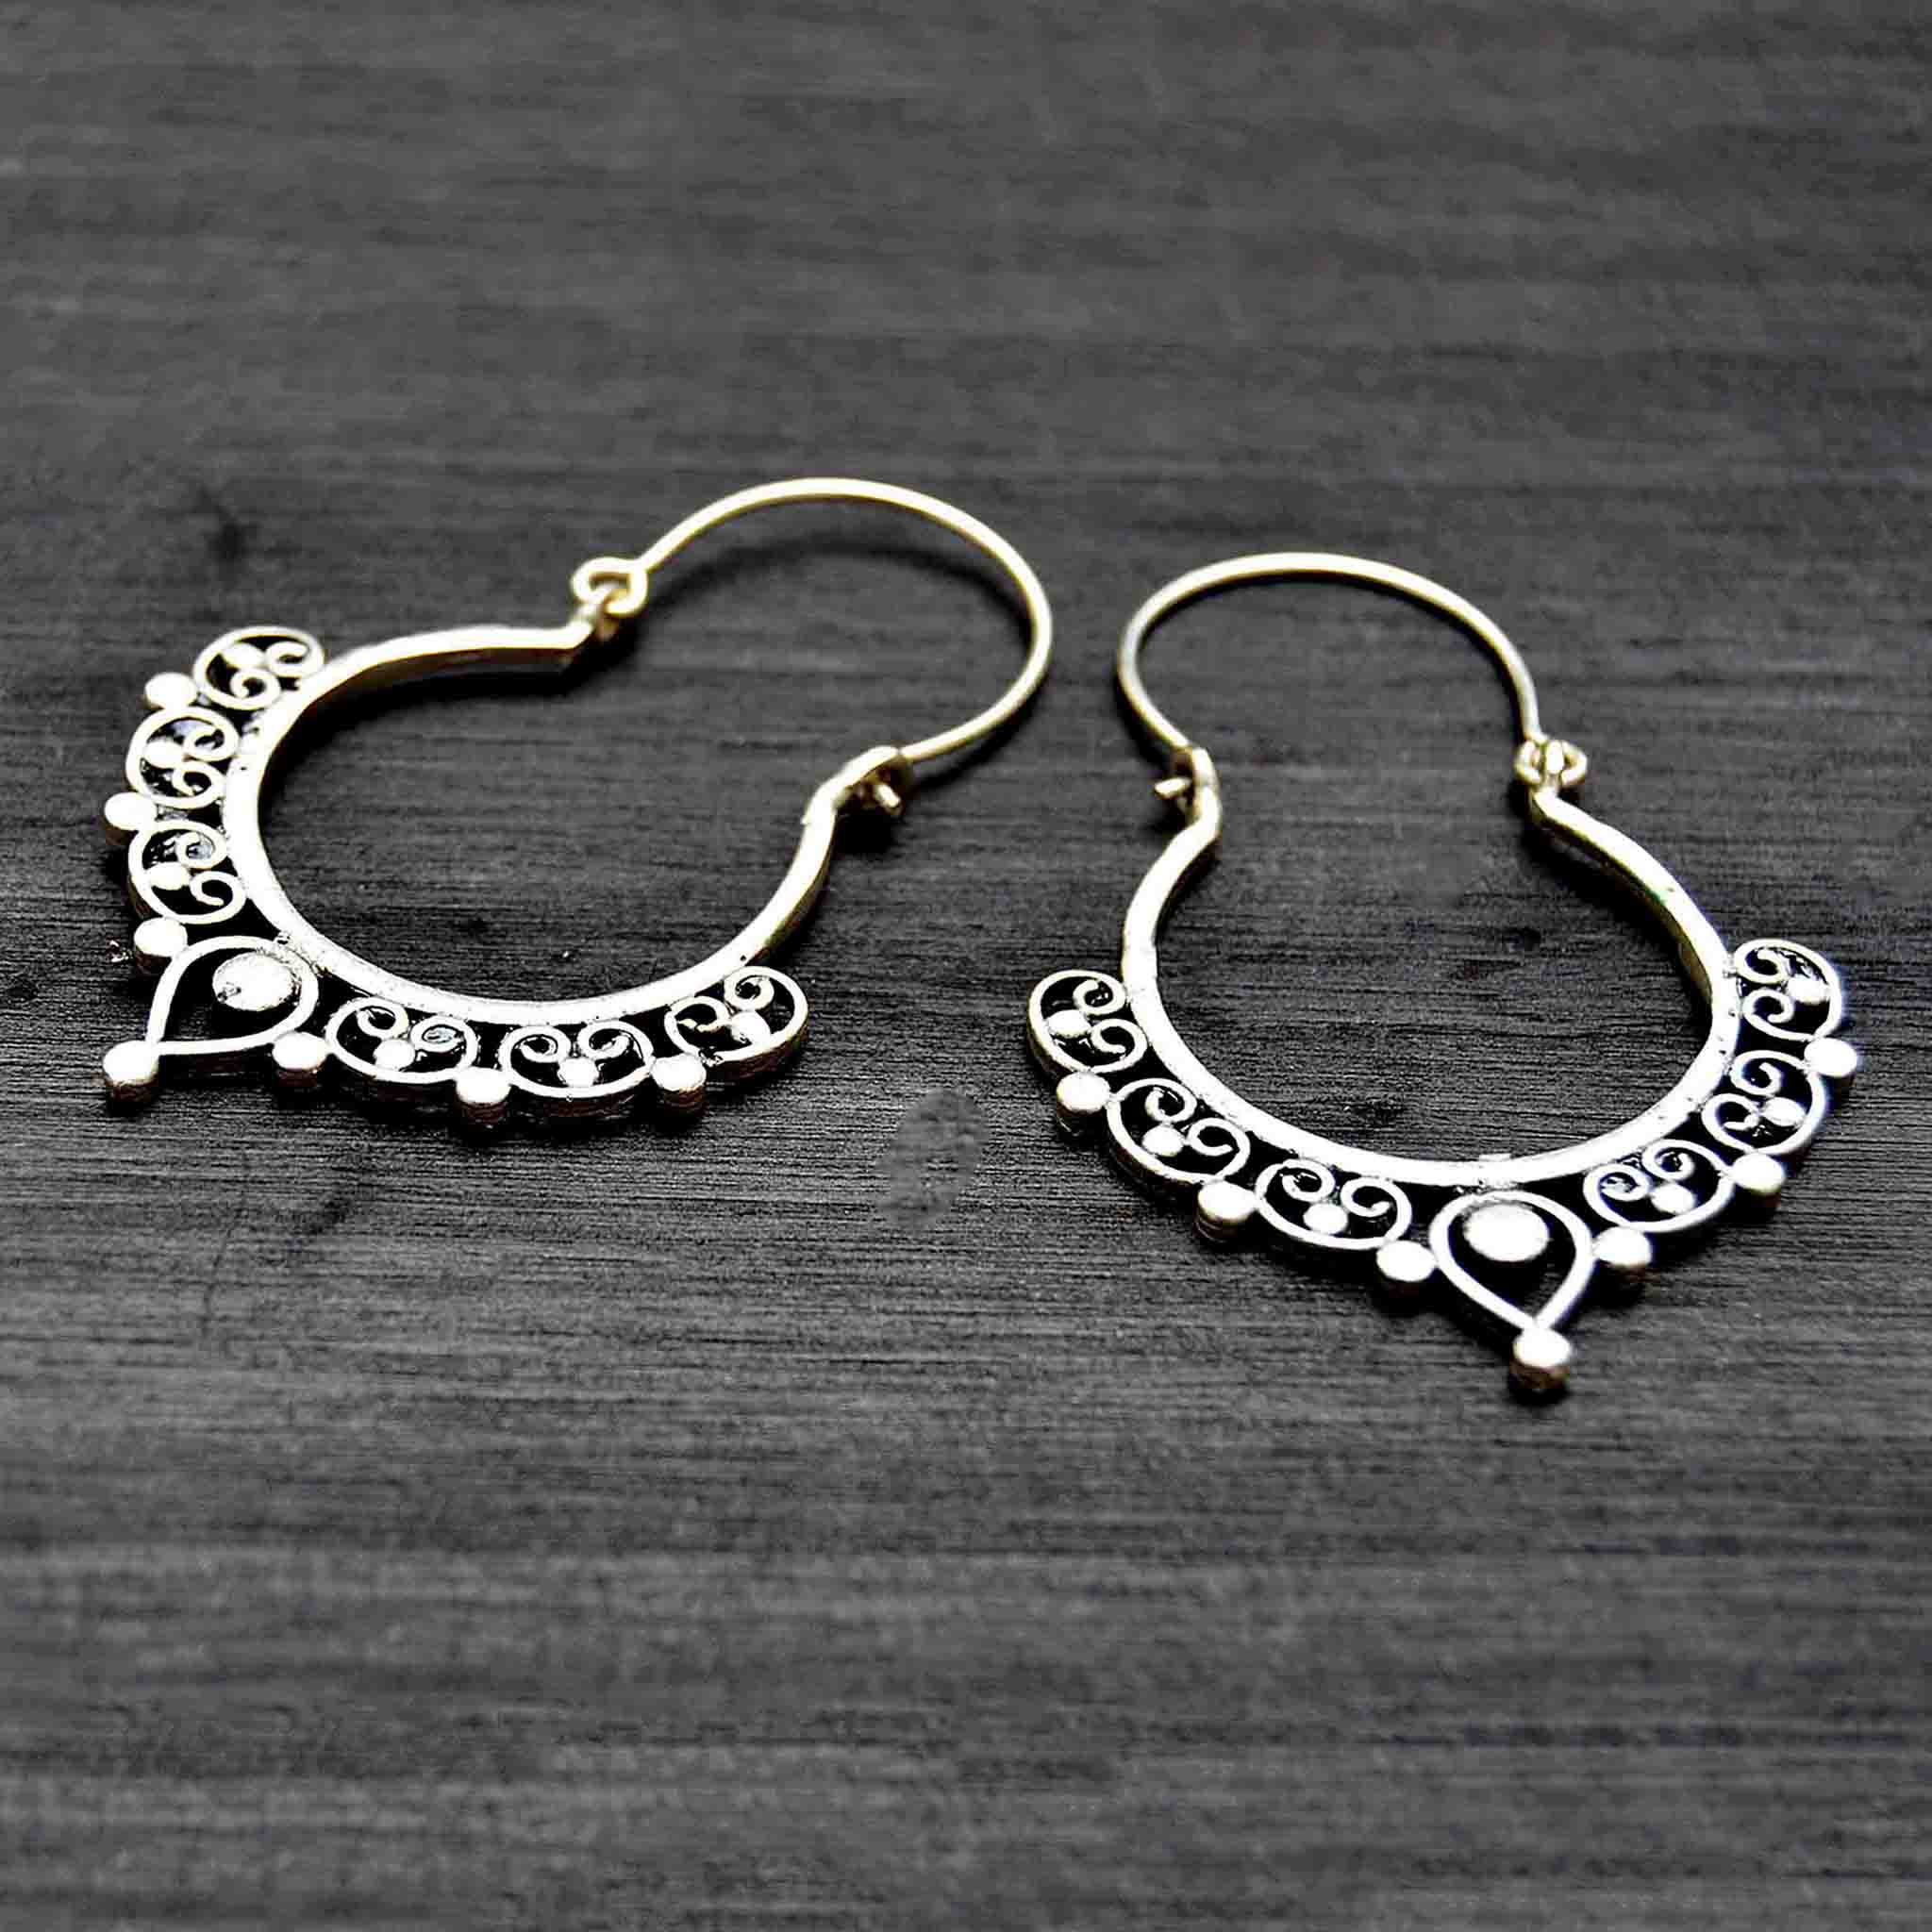 Silver ethnic banjara hoop earrings on black background